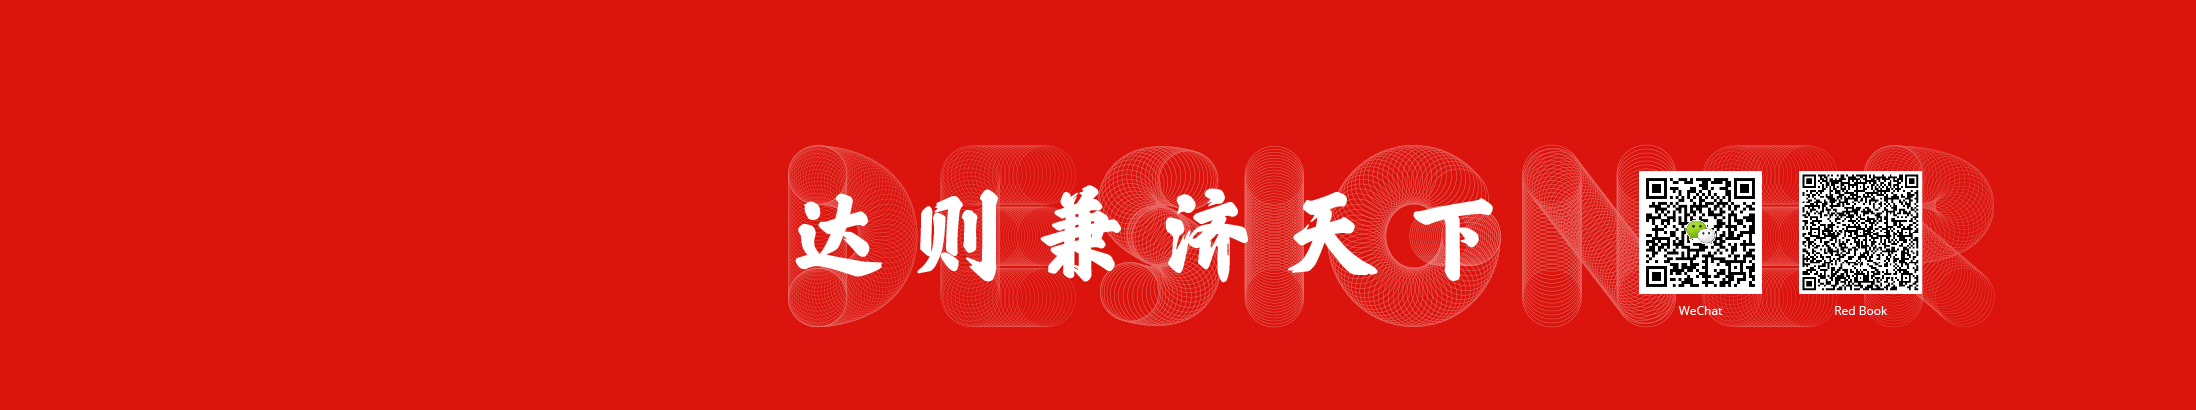 肖 羽婷's profile banner